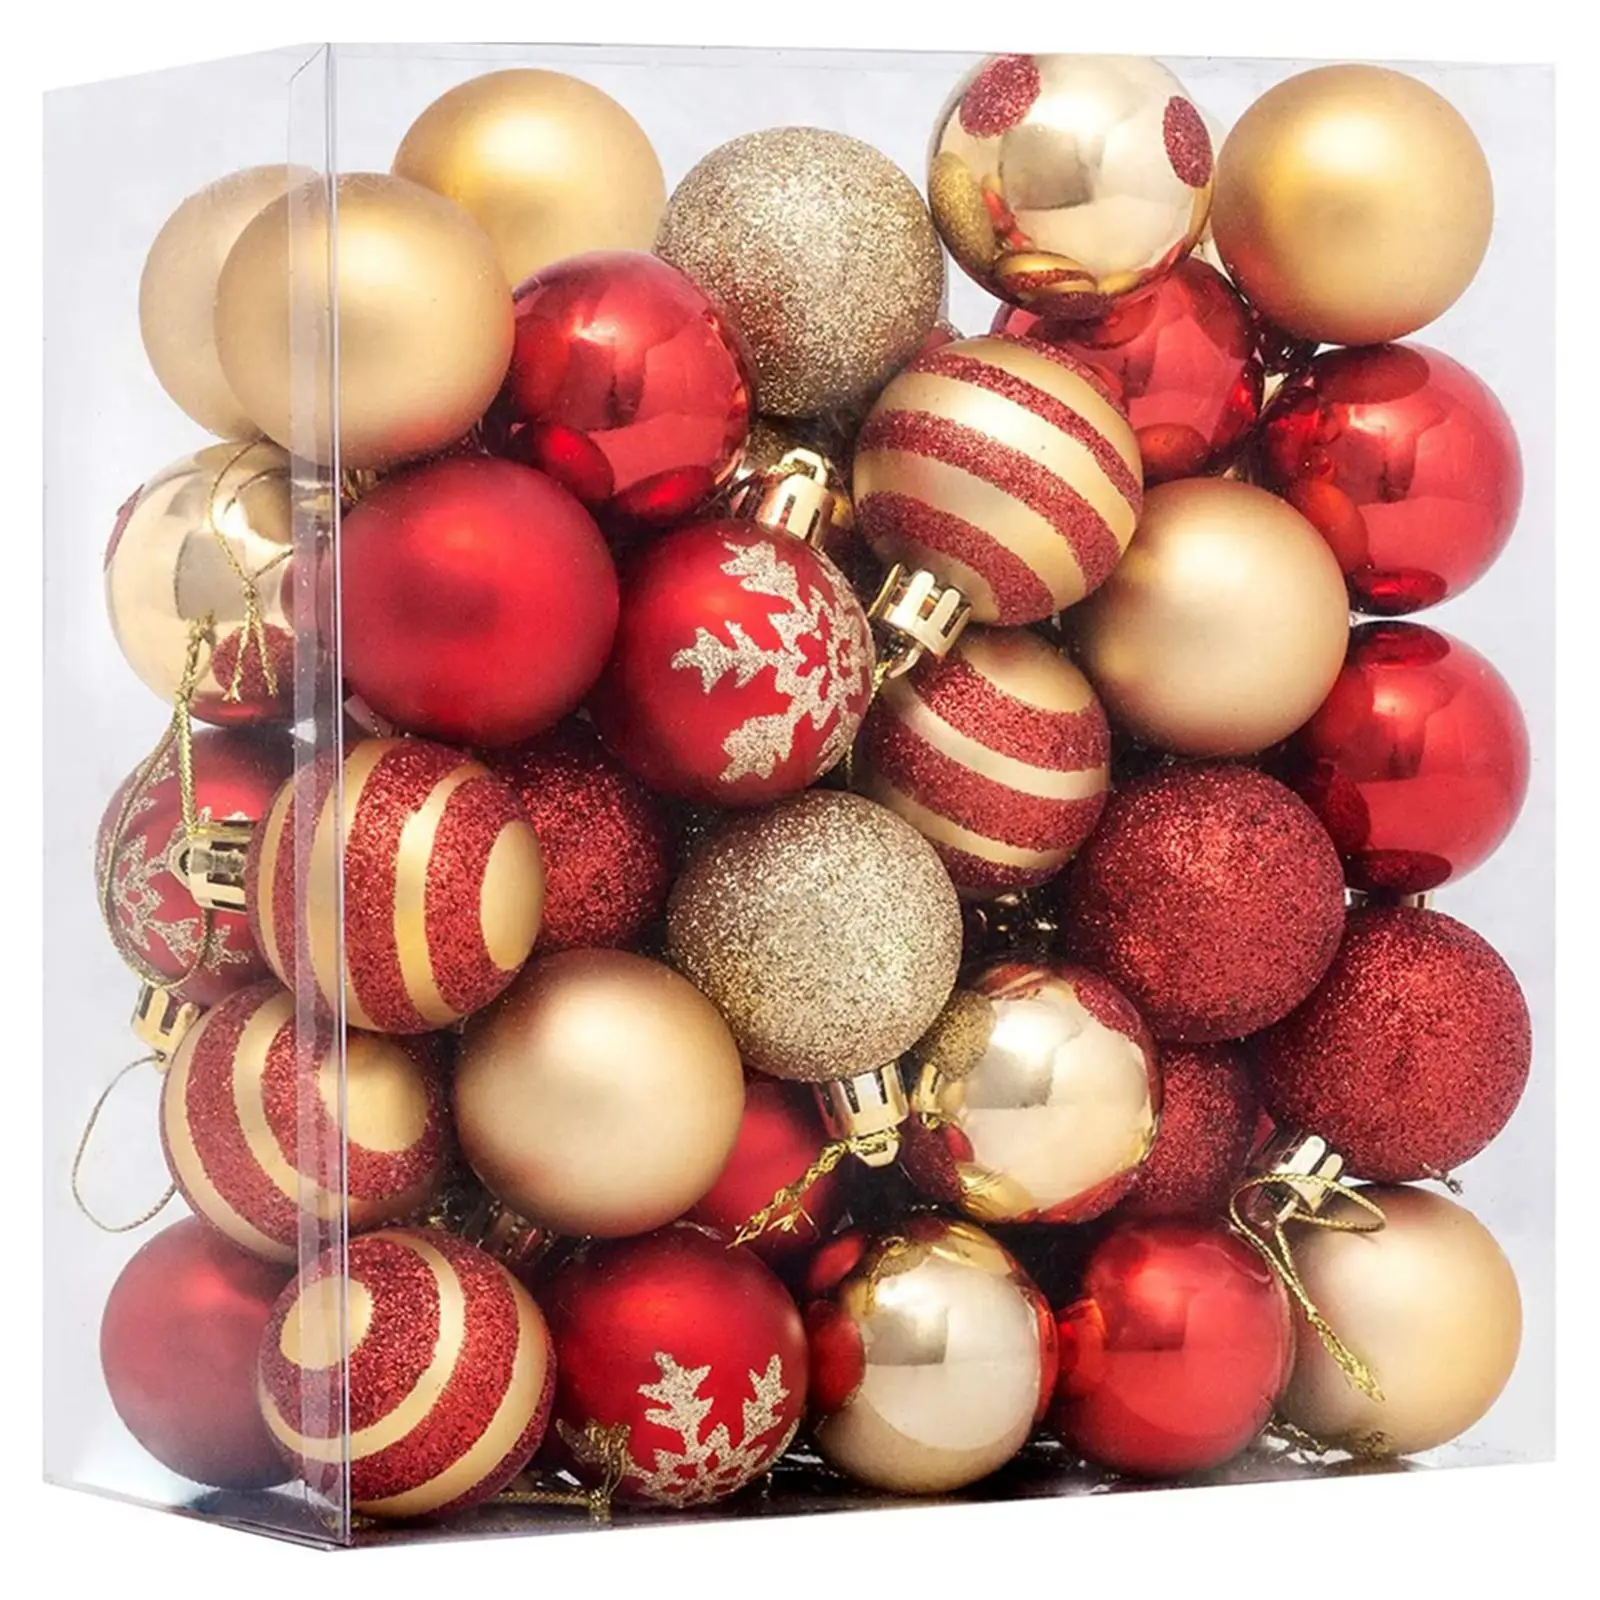 

50 шт. 4 см рождественские украшения для шаров, прочные с изысканным внешним видом, идеально подходят для праздничной атмосферы, праздника, свадебной вечеринки